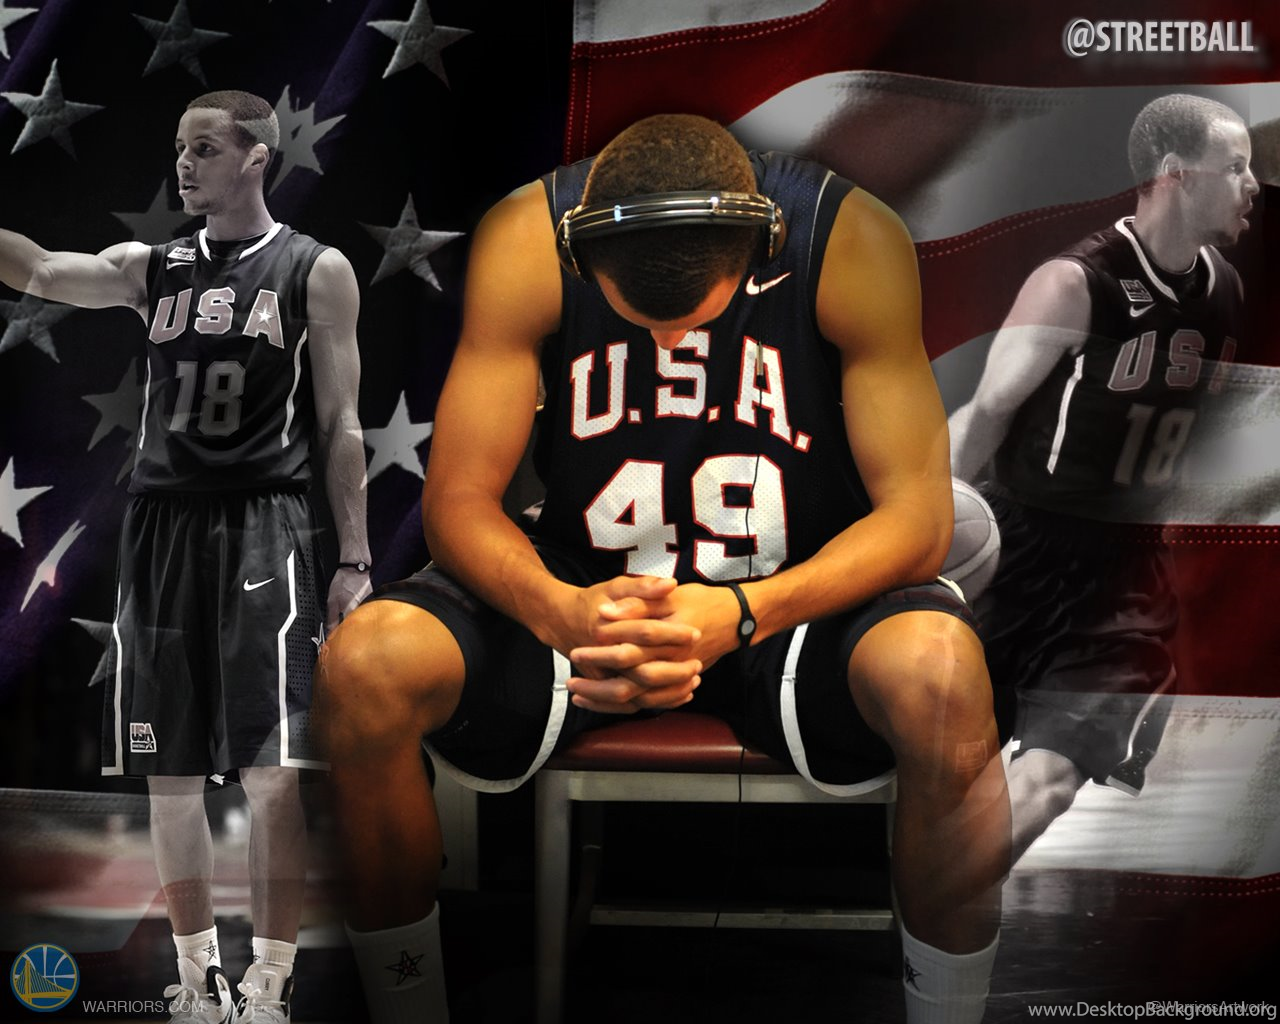 Stephen Curry Team USA Basketball Wallpaper Streetball Desktop Background